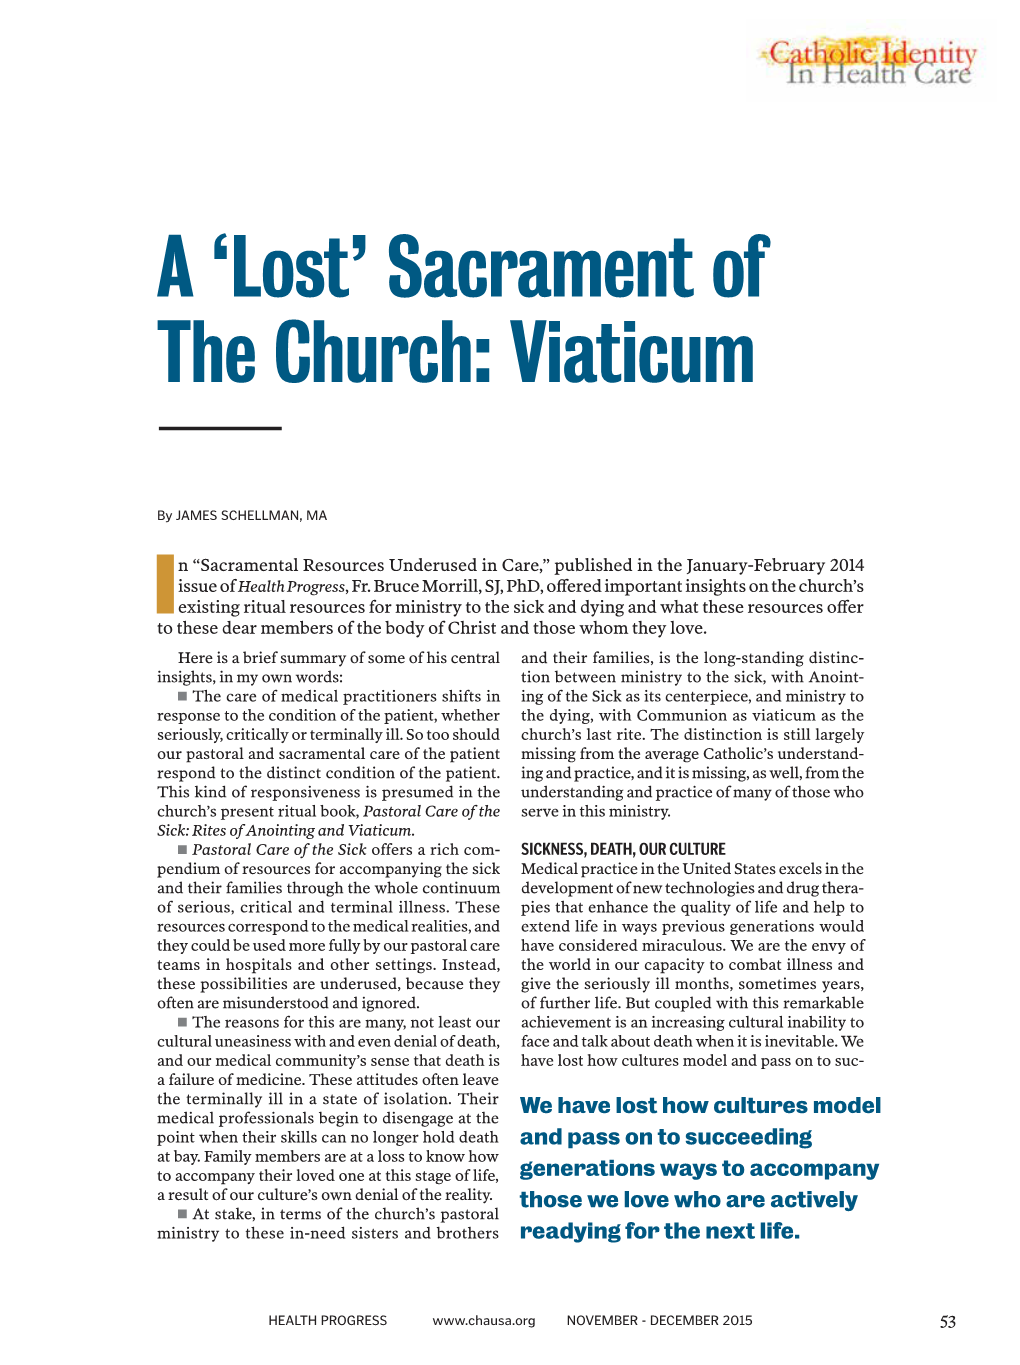 A 'Lost' Sacrament of the Church: Viaticum